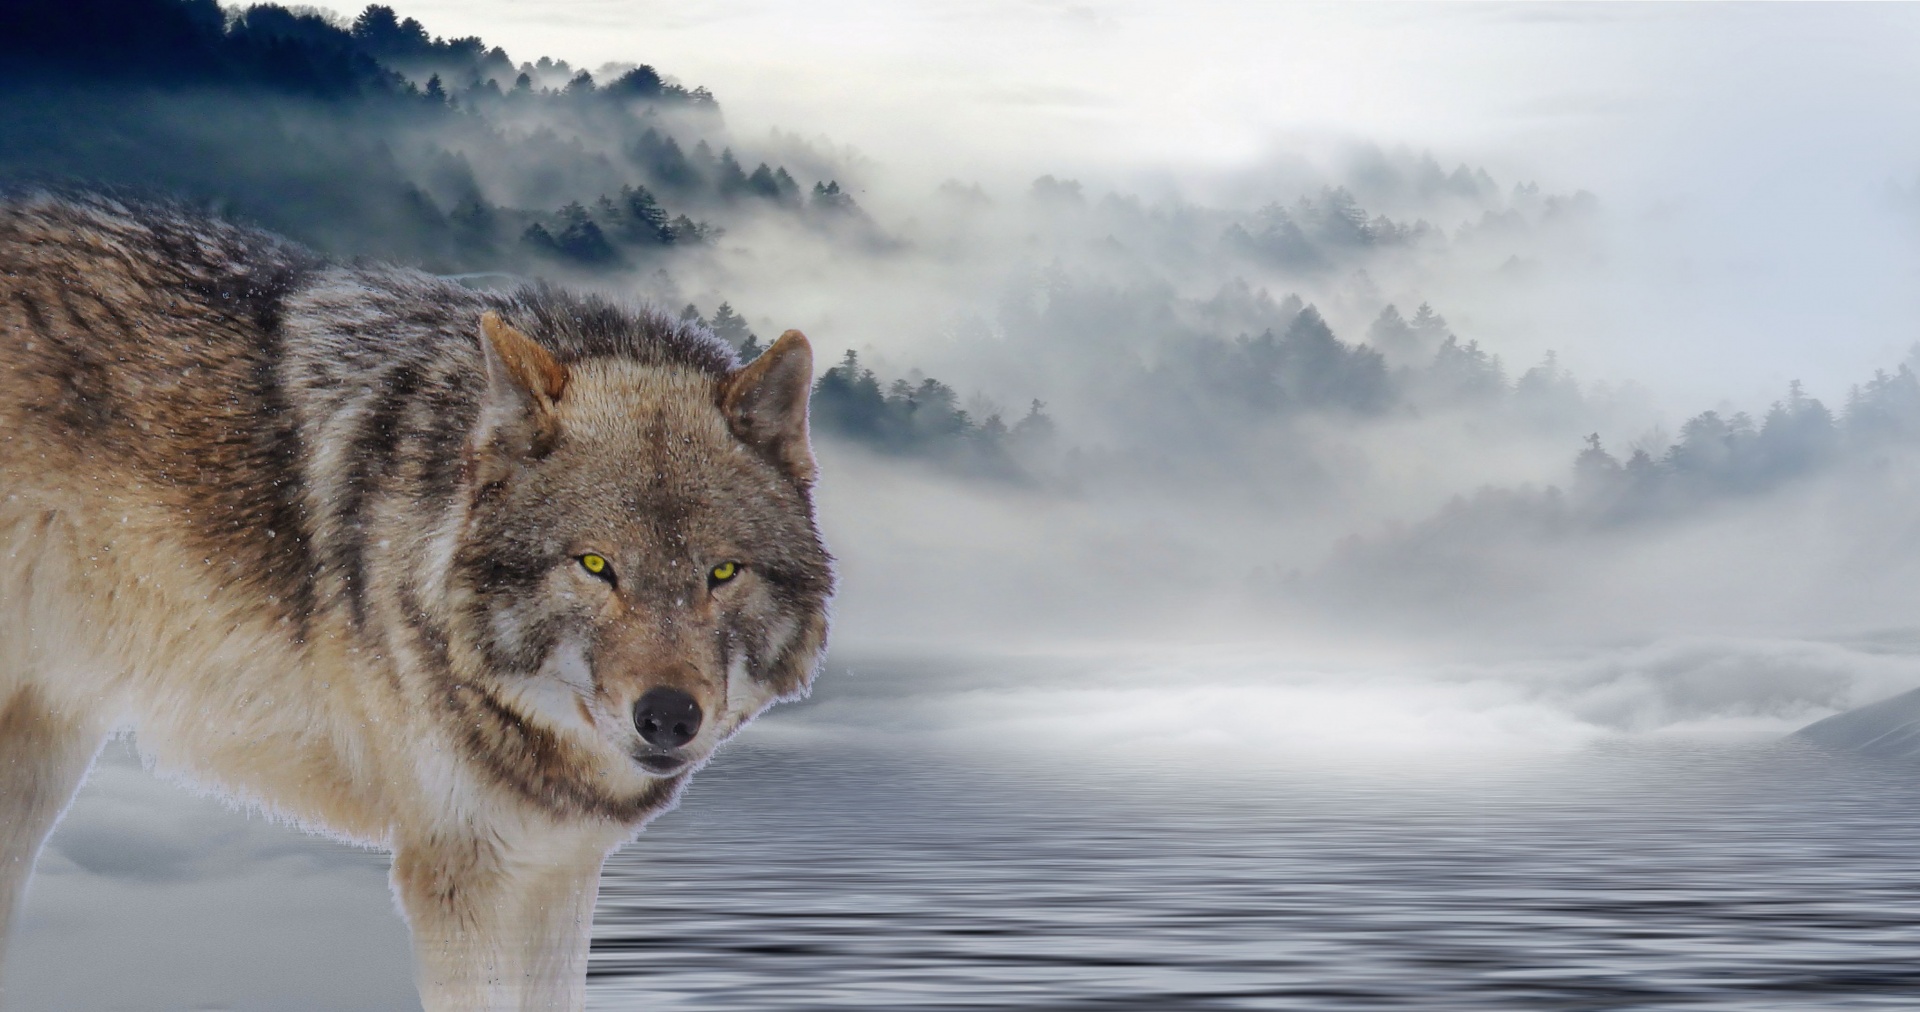 600+张最精彩的“狼”图片 · 100%免费下载 · Pexels素材图片